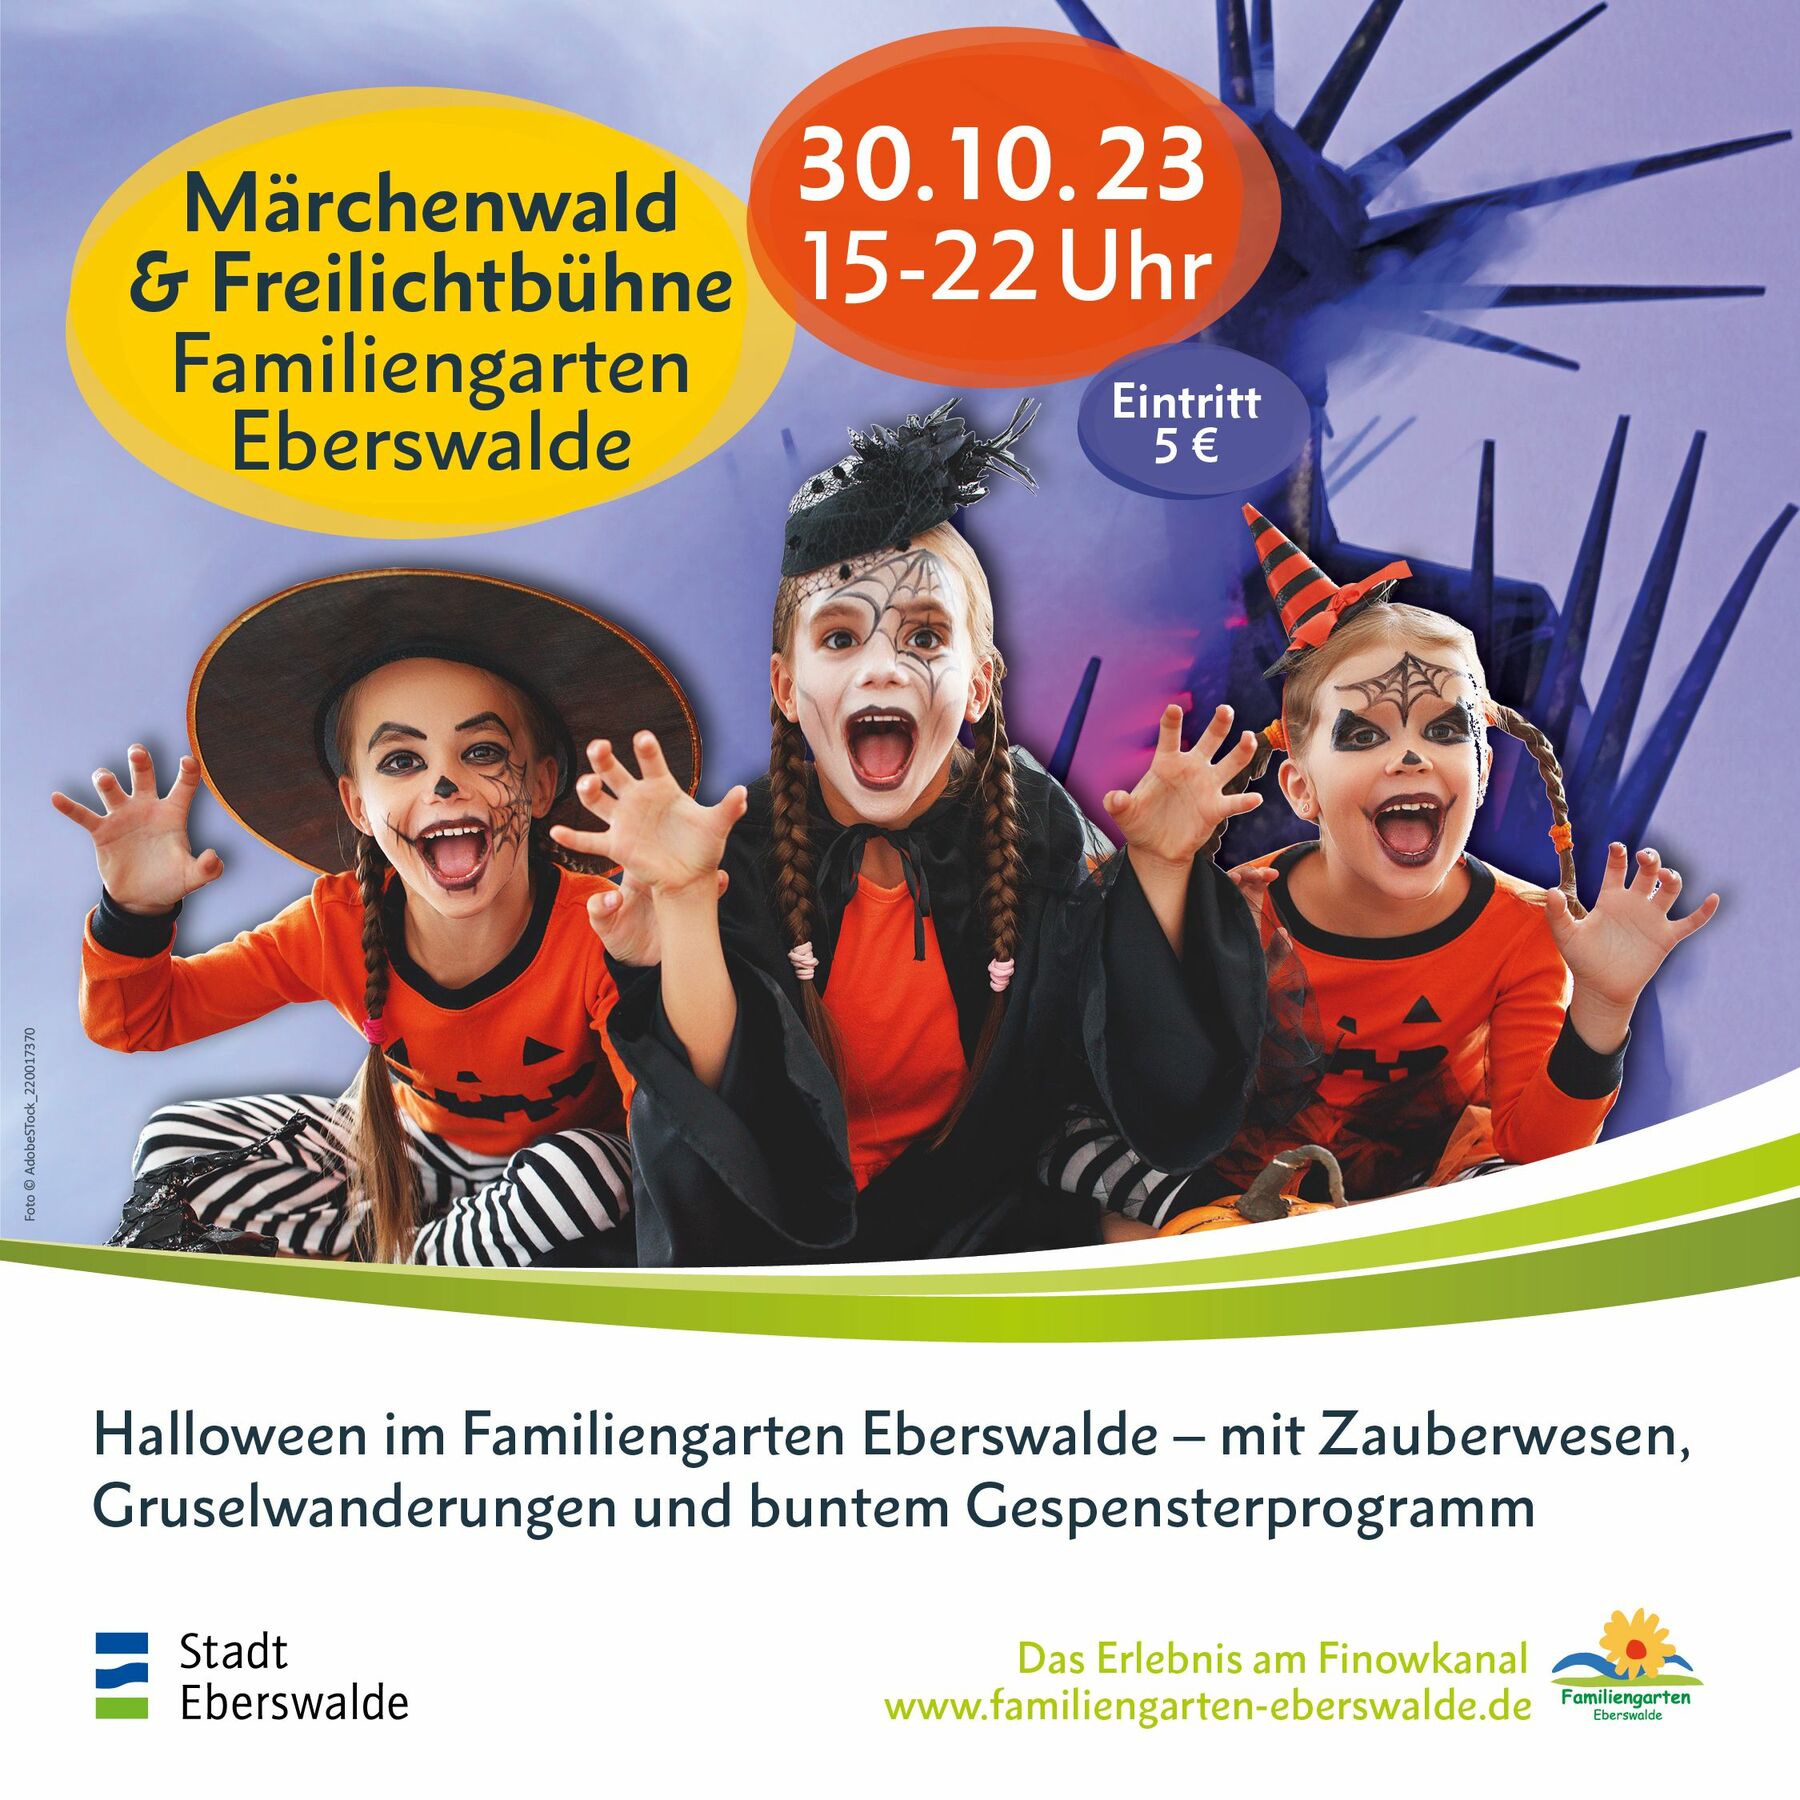 Halloweenpost, Foto: Familiengarten Eberswalde, Lizenz: Familiengarten Eberswalde